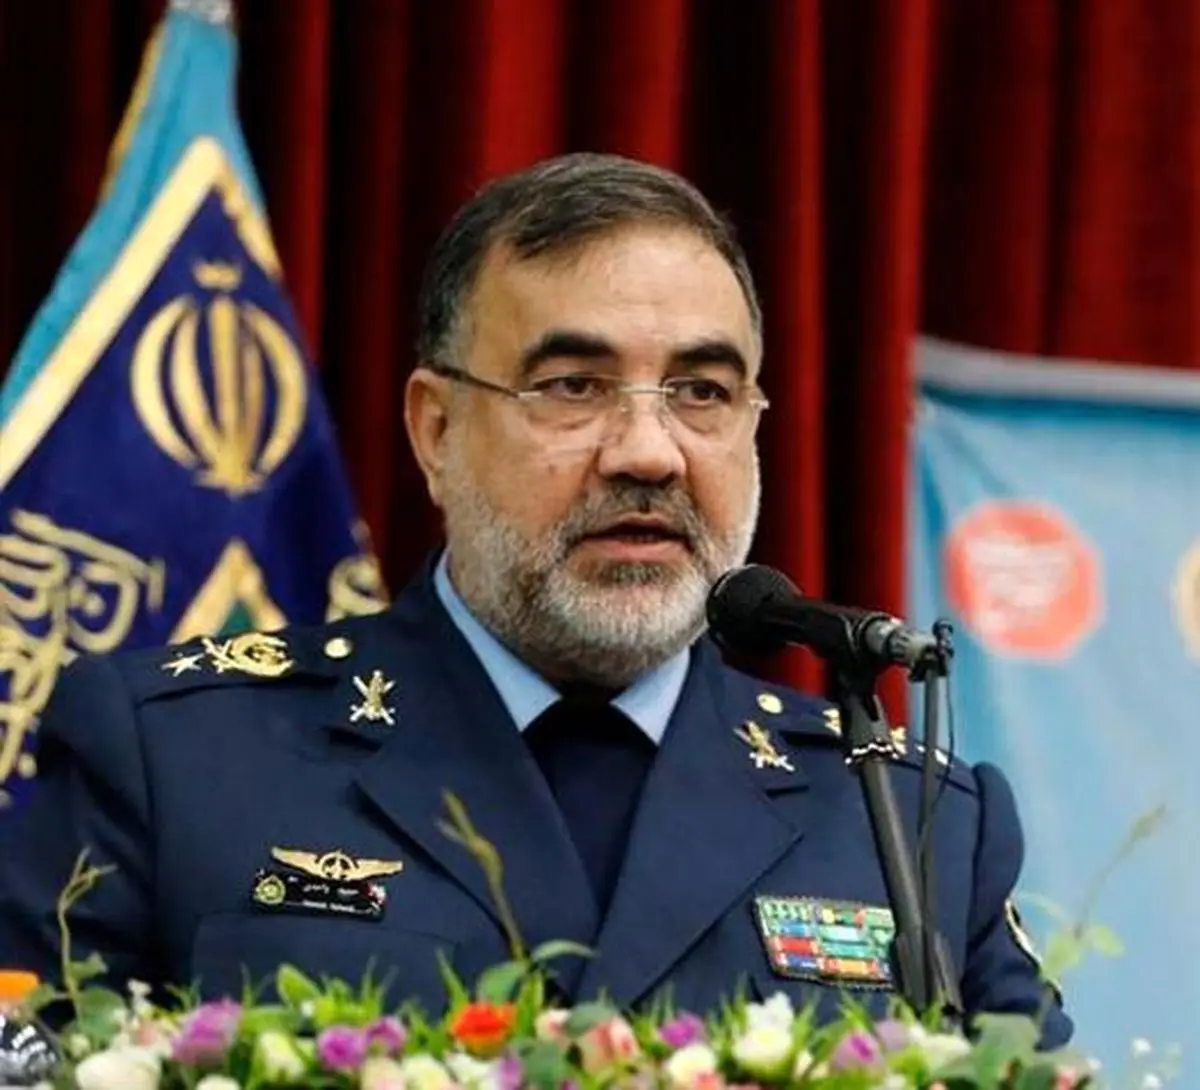 پاکستان به خاک ایران تجاوز کرد؛ فرمانده نیروی هوایی ارتش درباره حجاب اظهارنظر کرد